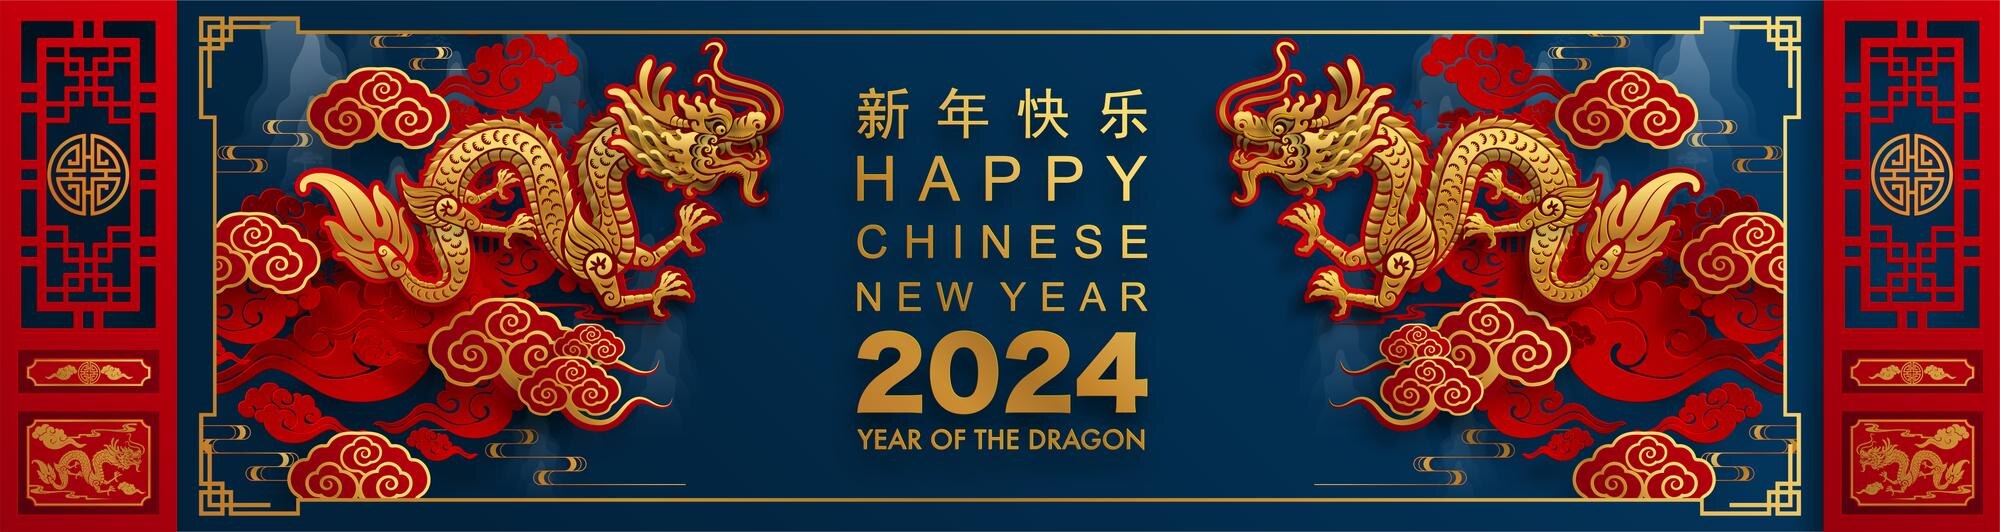 Китайский новый год 2024. Китайский новый год в 2024 году. Китайский новый год 2024 год дракона. Китайский новый год 2024 открытки. Великая китайская распродажа 2024